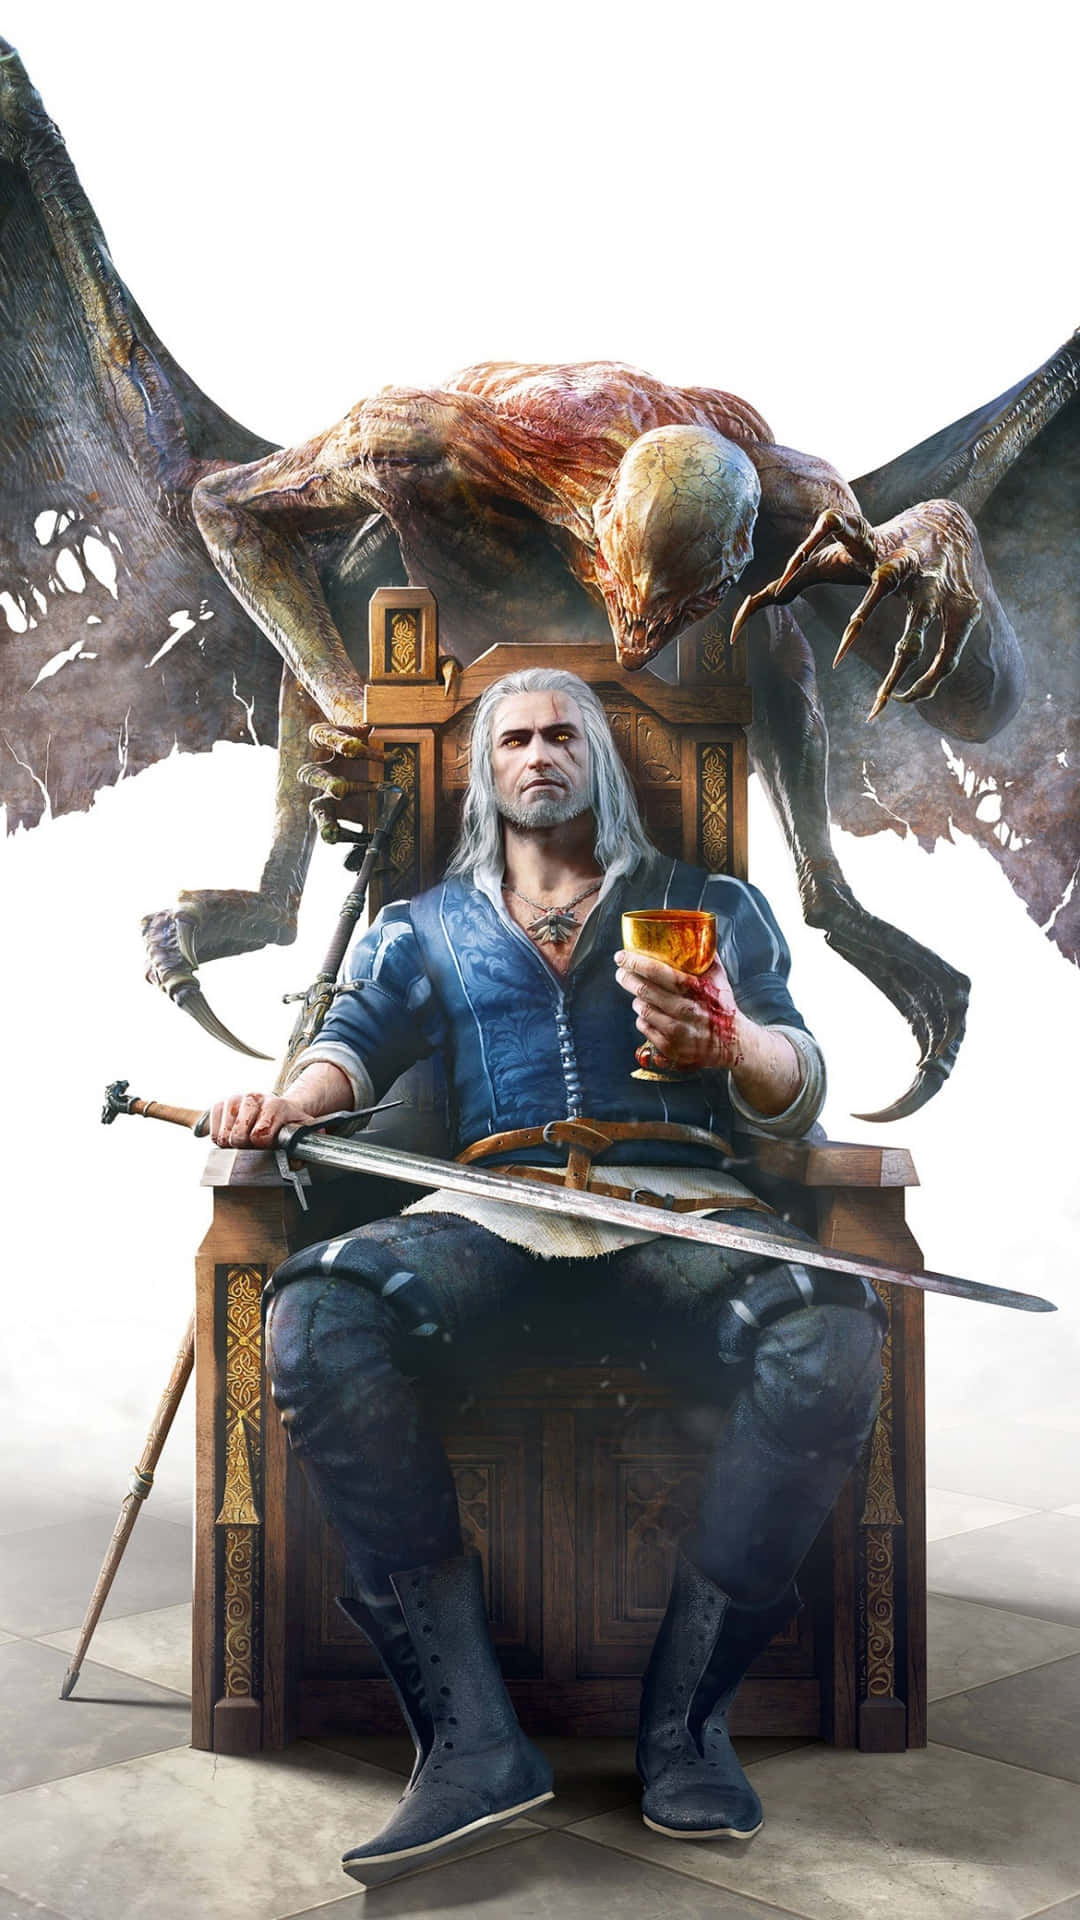 Bakgrundmed Geralt På Tronen Från Witcher 3 För Mobiltelefon. Wallpaper